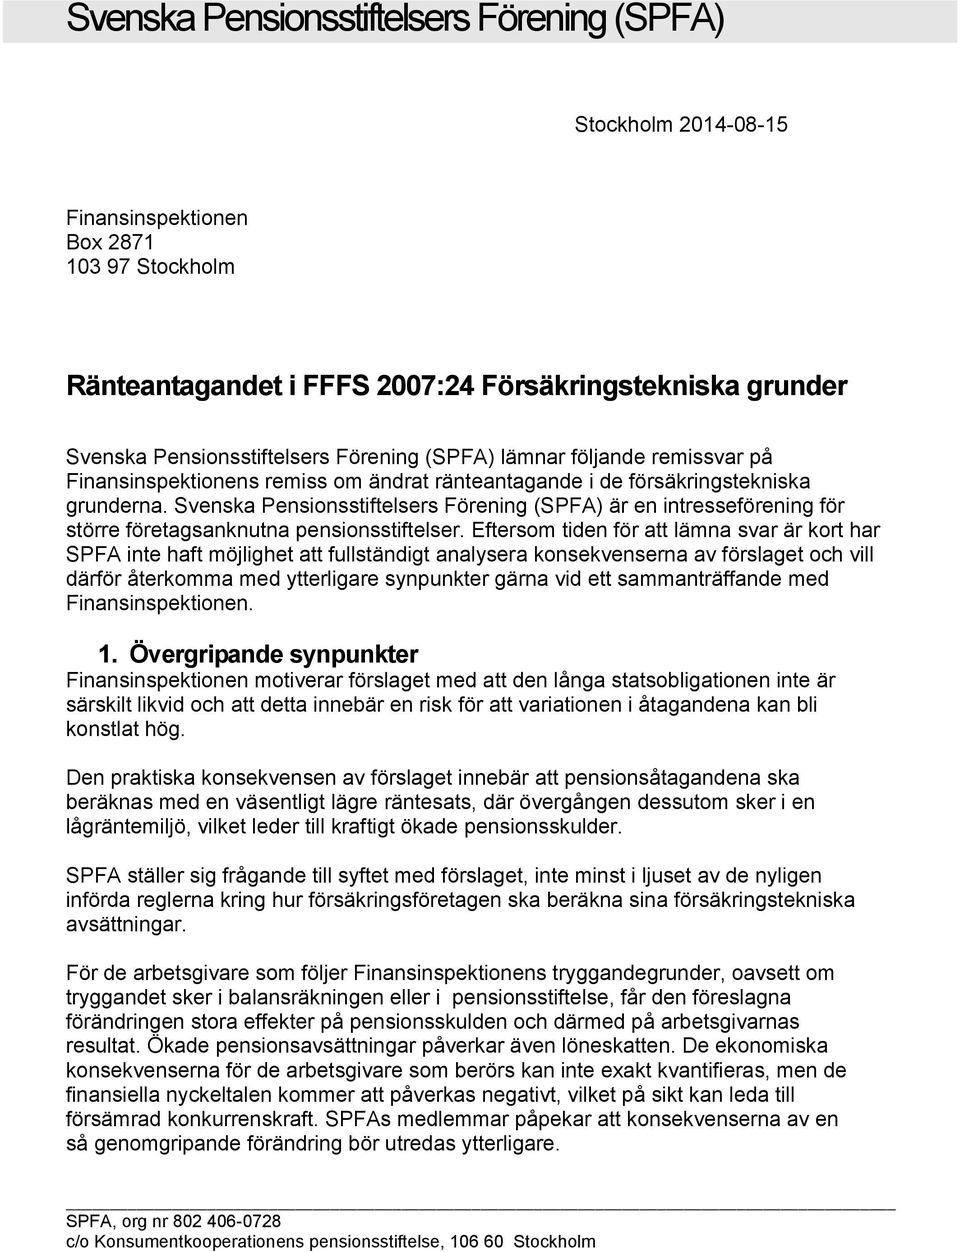 Svenska Pensionsstiftelsers Förening (SPFA) är en intresseförening för större företagsanknutna pensionsstiftelser.